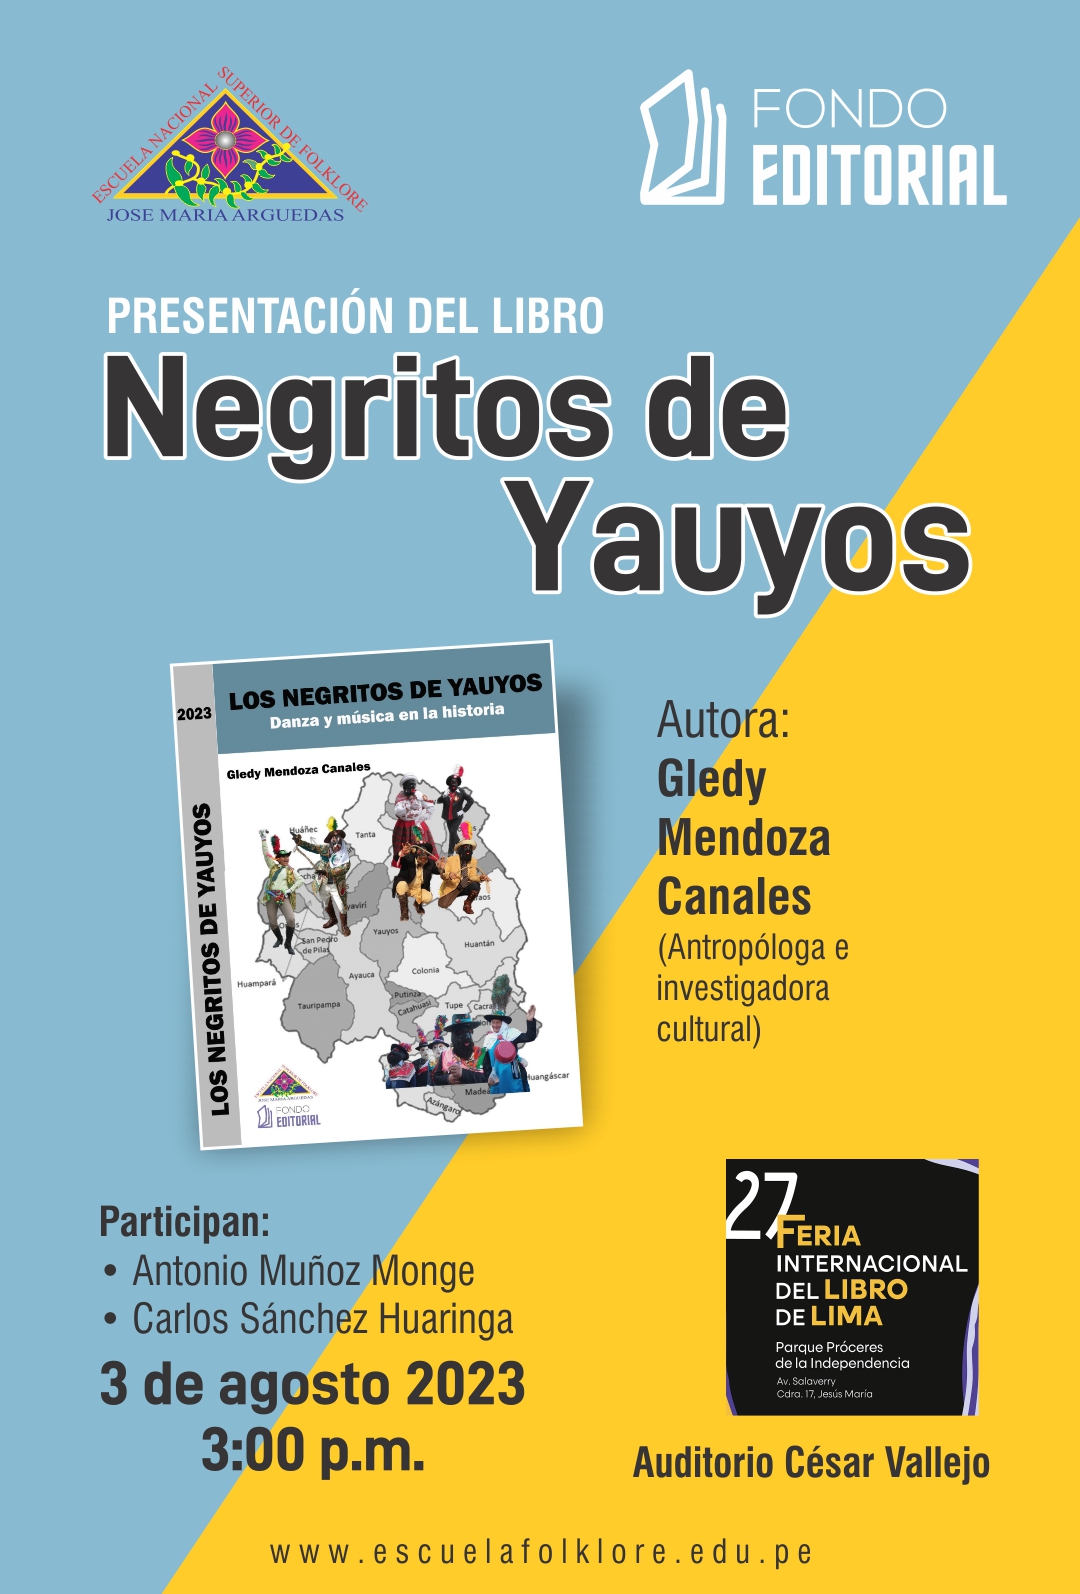 PRESENTACIÓN DEL LIBRO NEGRITOS DE YAUYOS